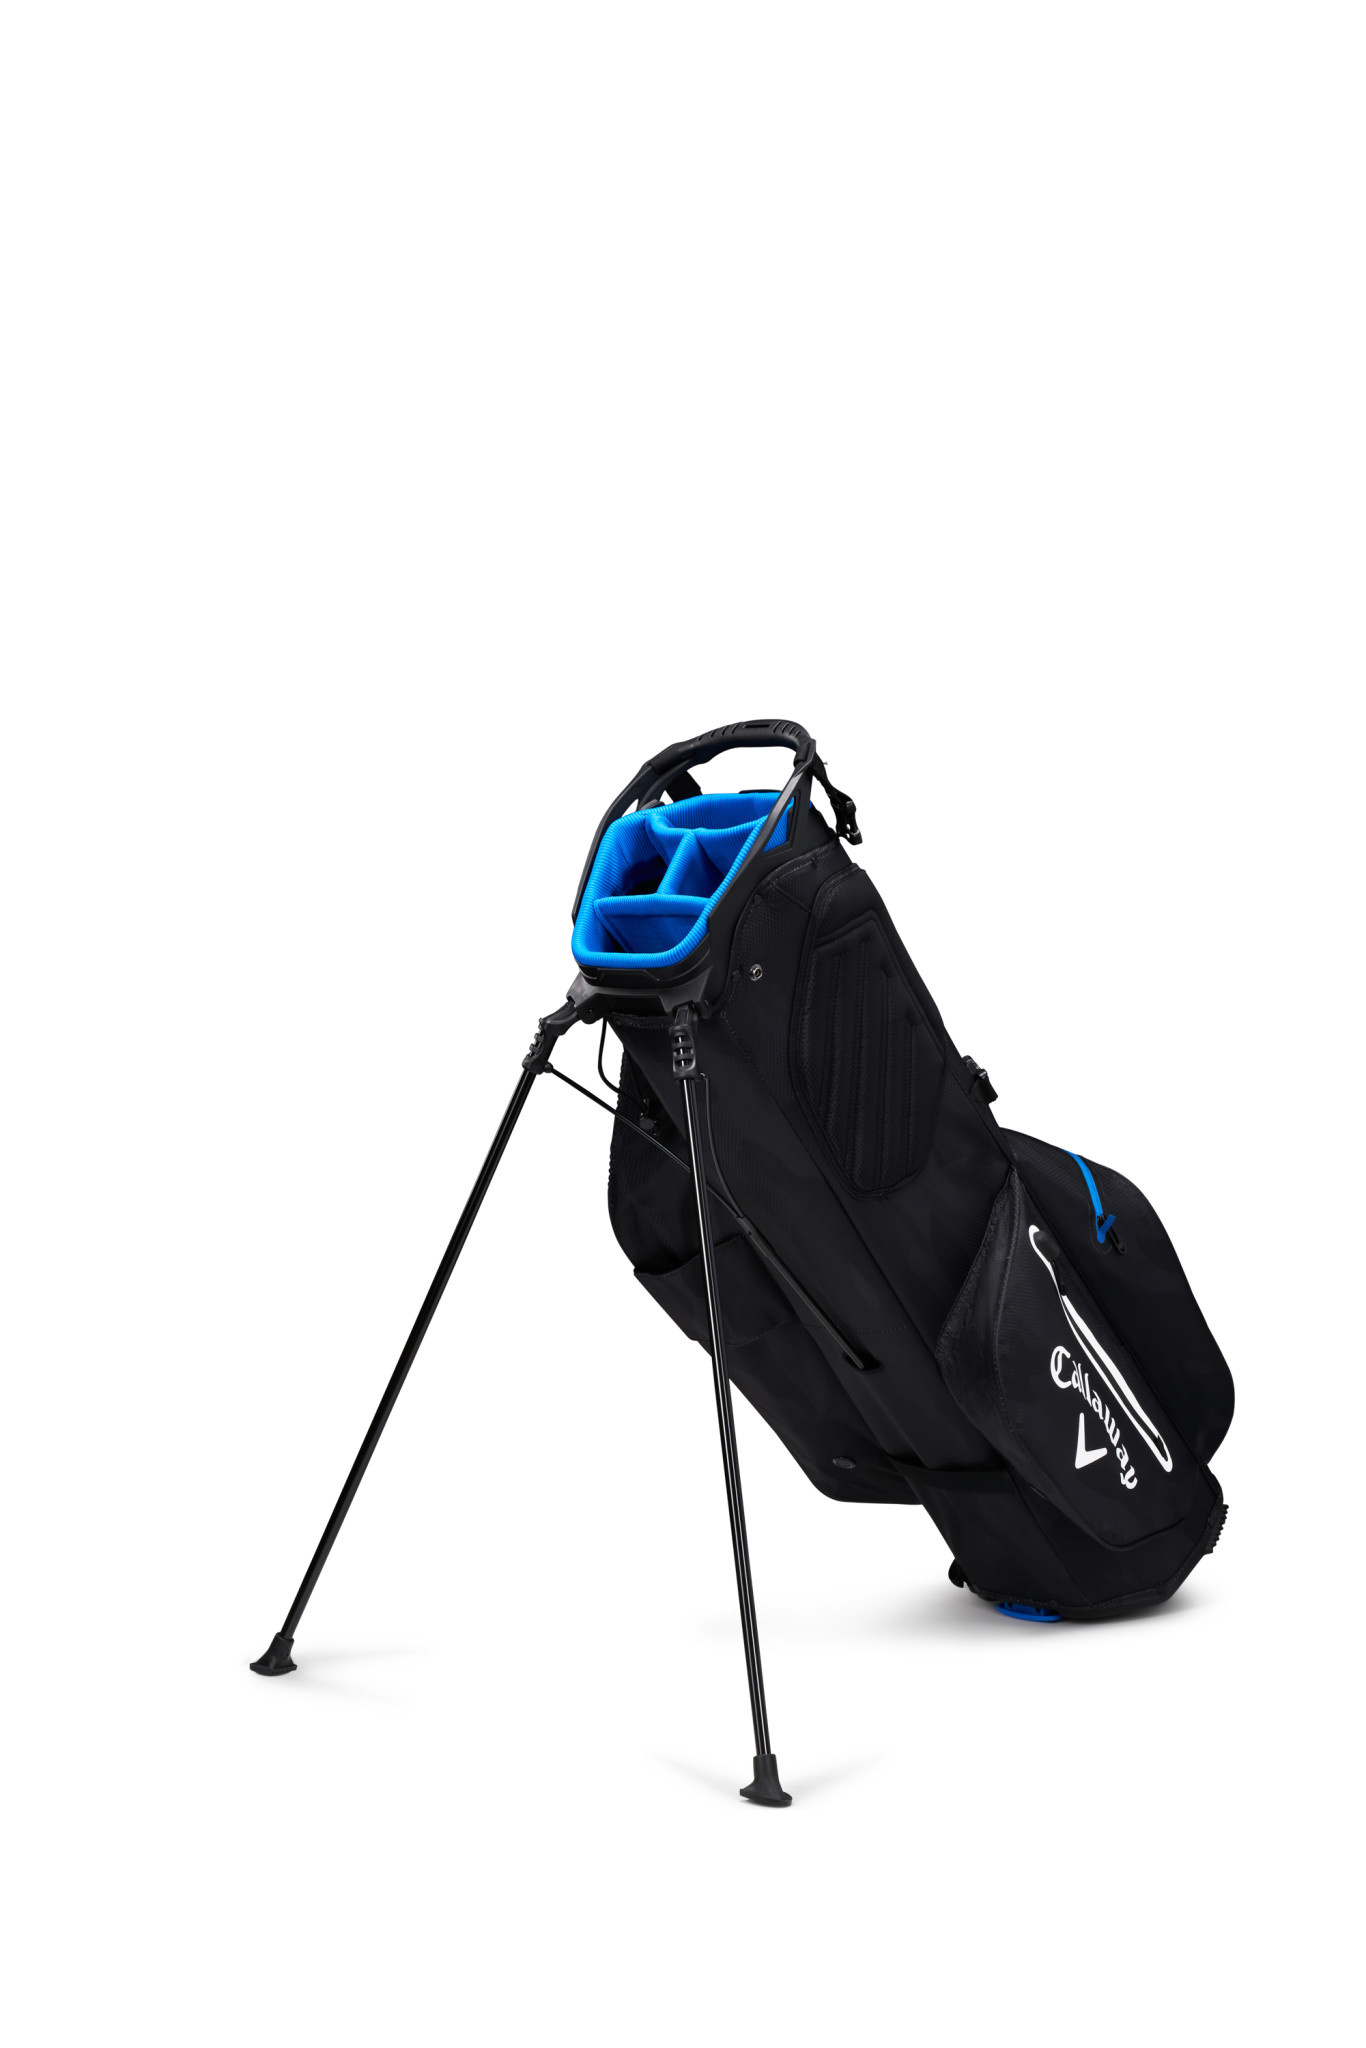 genade Tentakel identificatie Callaway Carry bag Fairway C HD golftas zwart blauw - Frank Hoekzema Golf